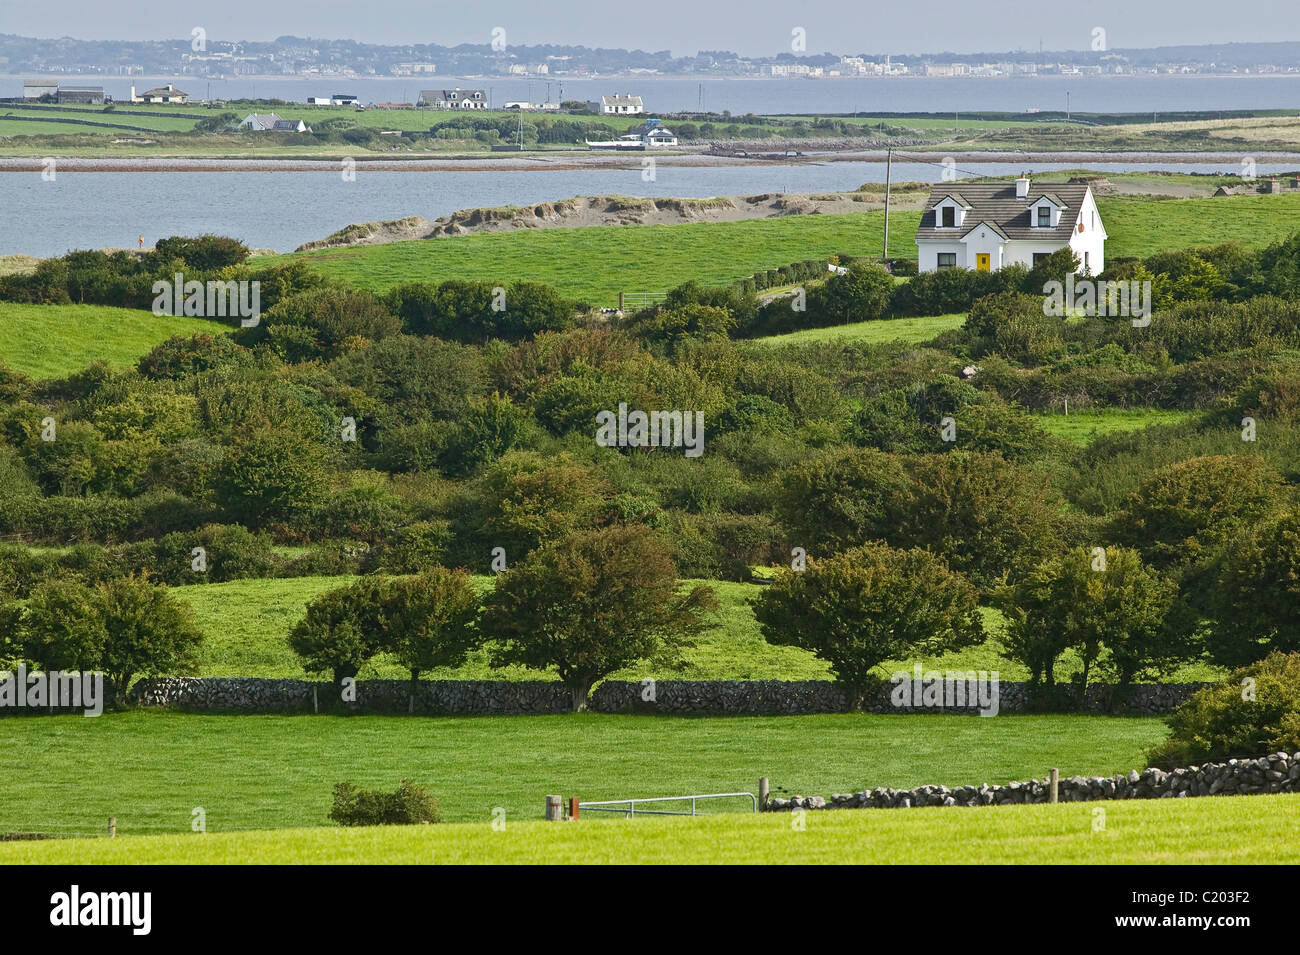 Landscape near Burren in Ireland Stock Photo